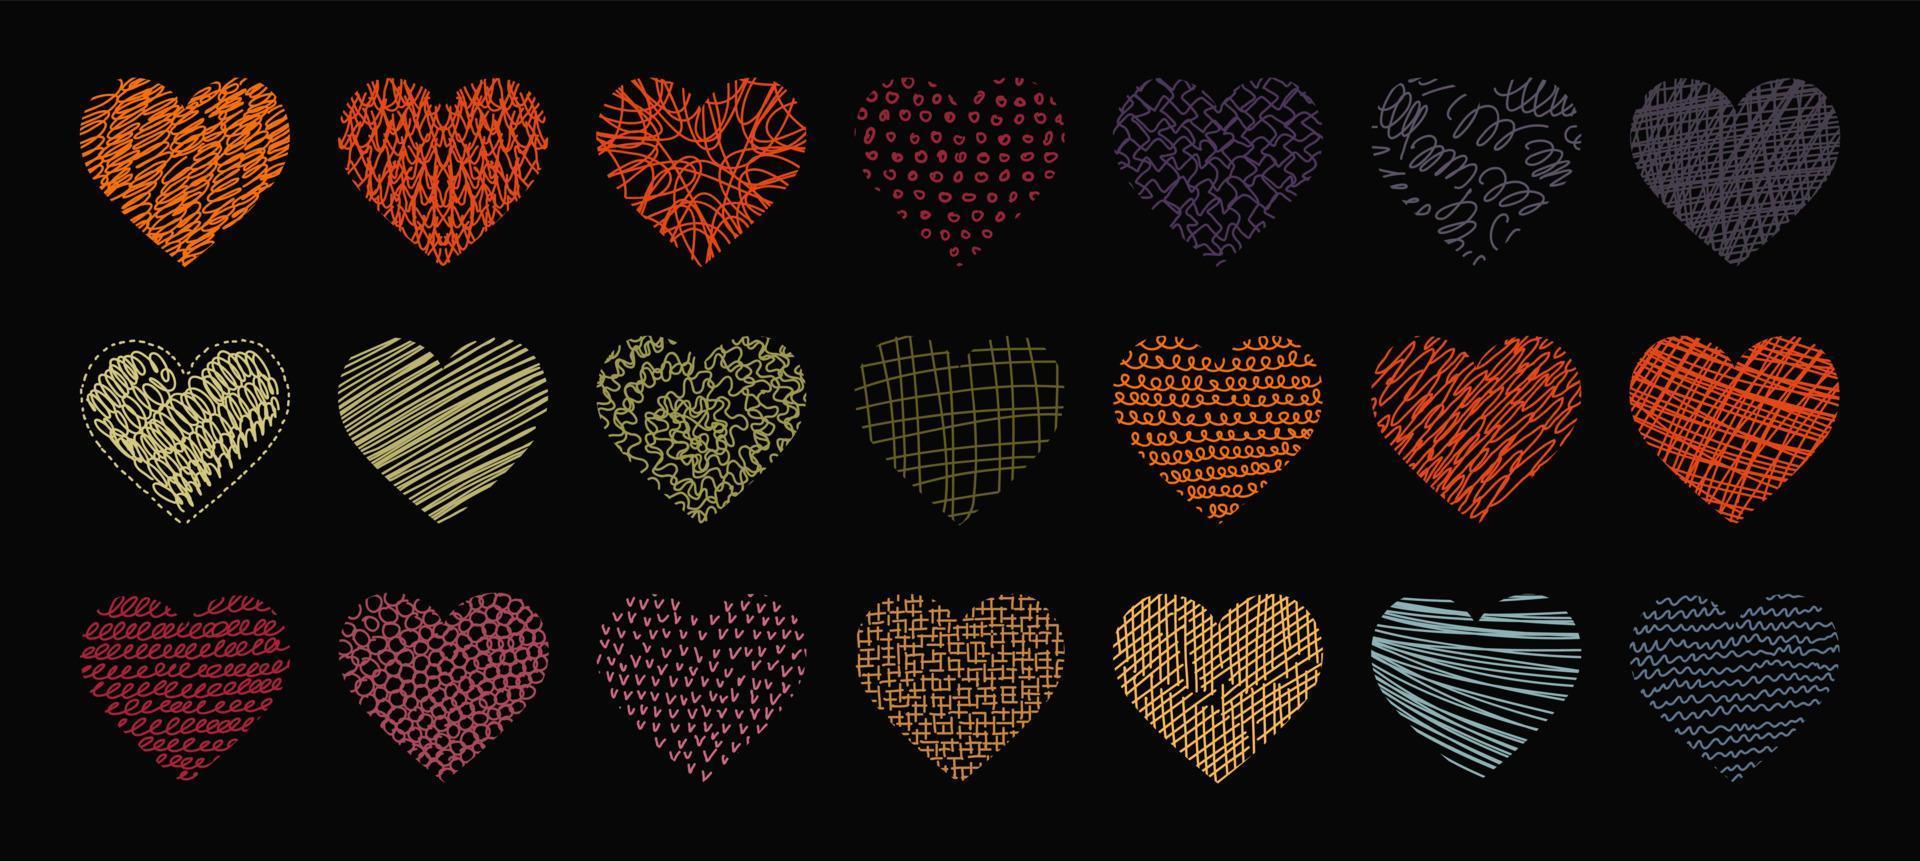 vektor uppsättning abstrakta hjärtformade bakgrunder. moderna trendiga alla hjärtans dag illustration. mönster av handritade kurvor, linjer. doodle ikoner för sociala nätverk, affischer, designmallar